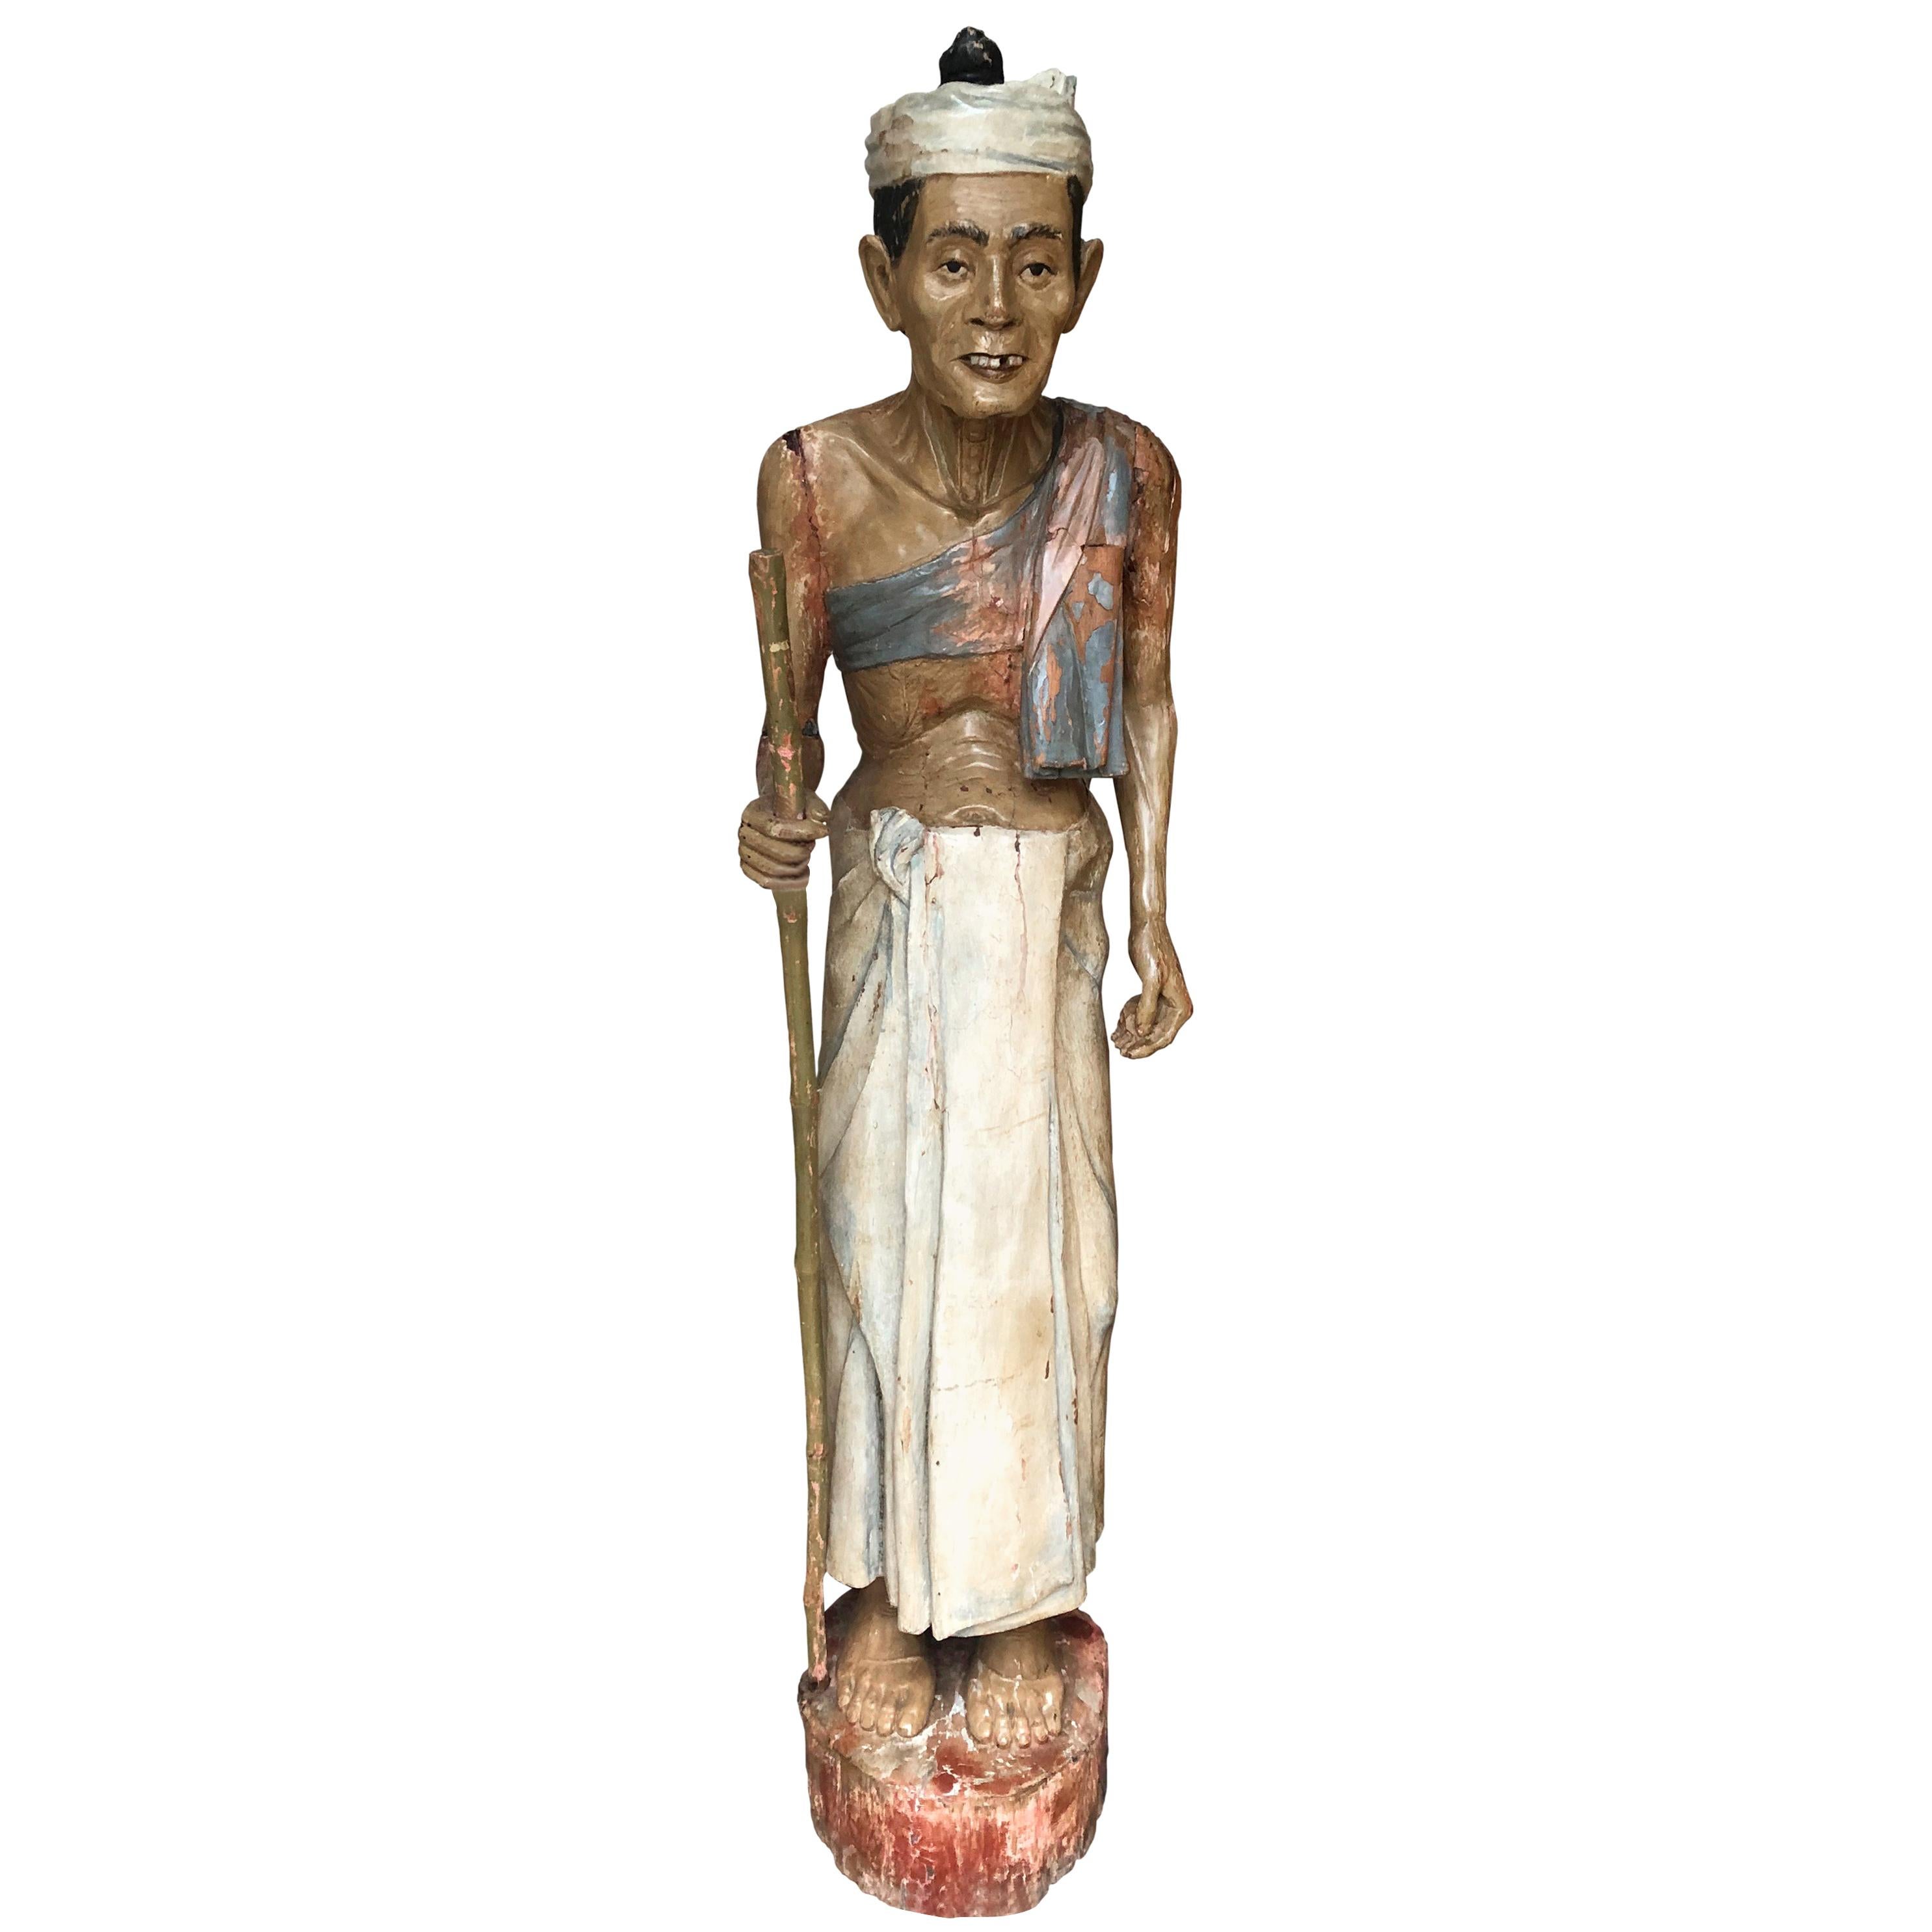 Antike Volkskunst-Statue eines einheimischen Mannes aus geschnitztem Gesso auf Holz, handbemalt